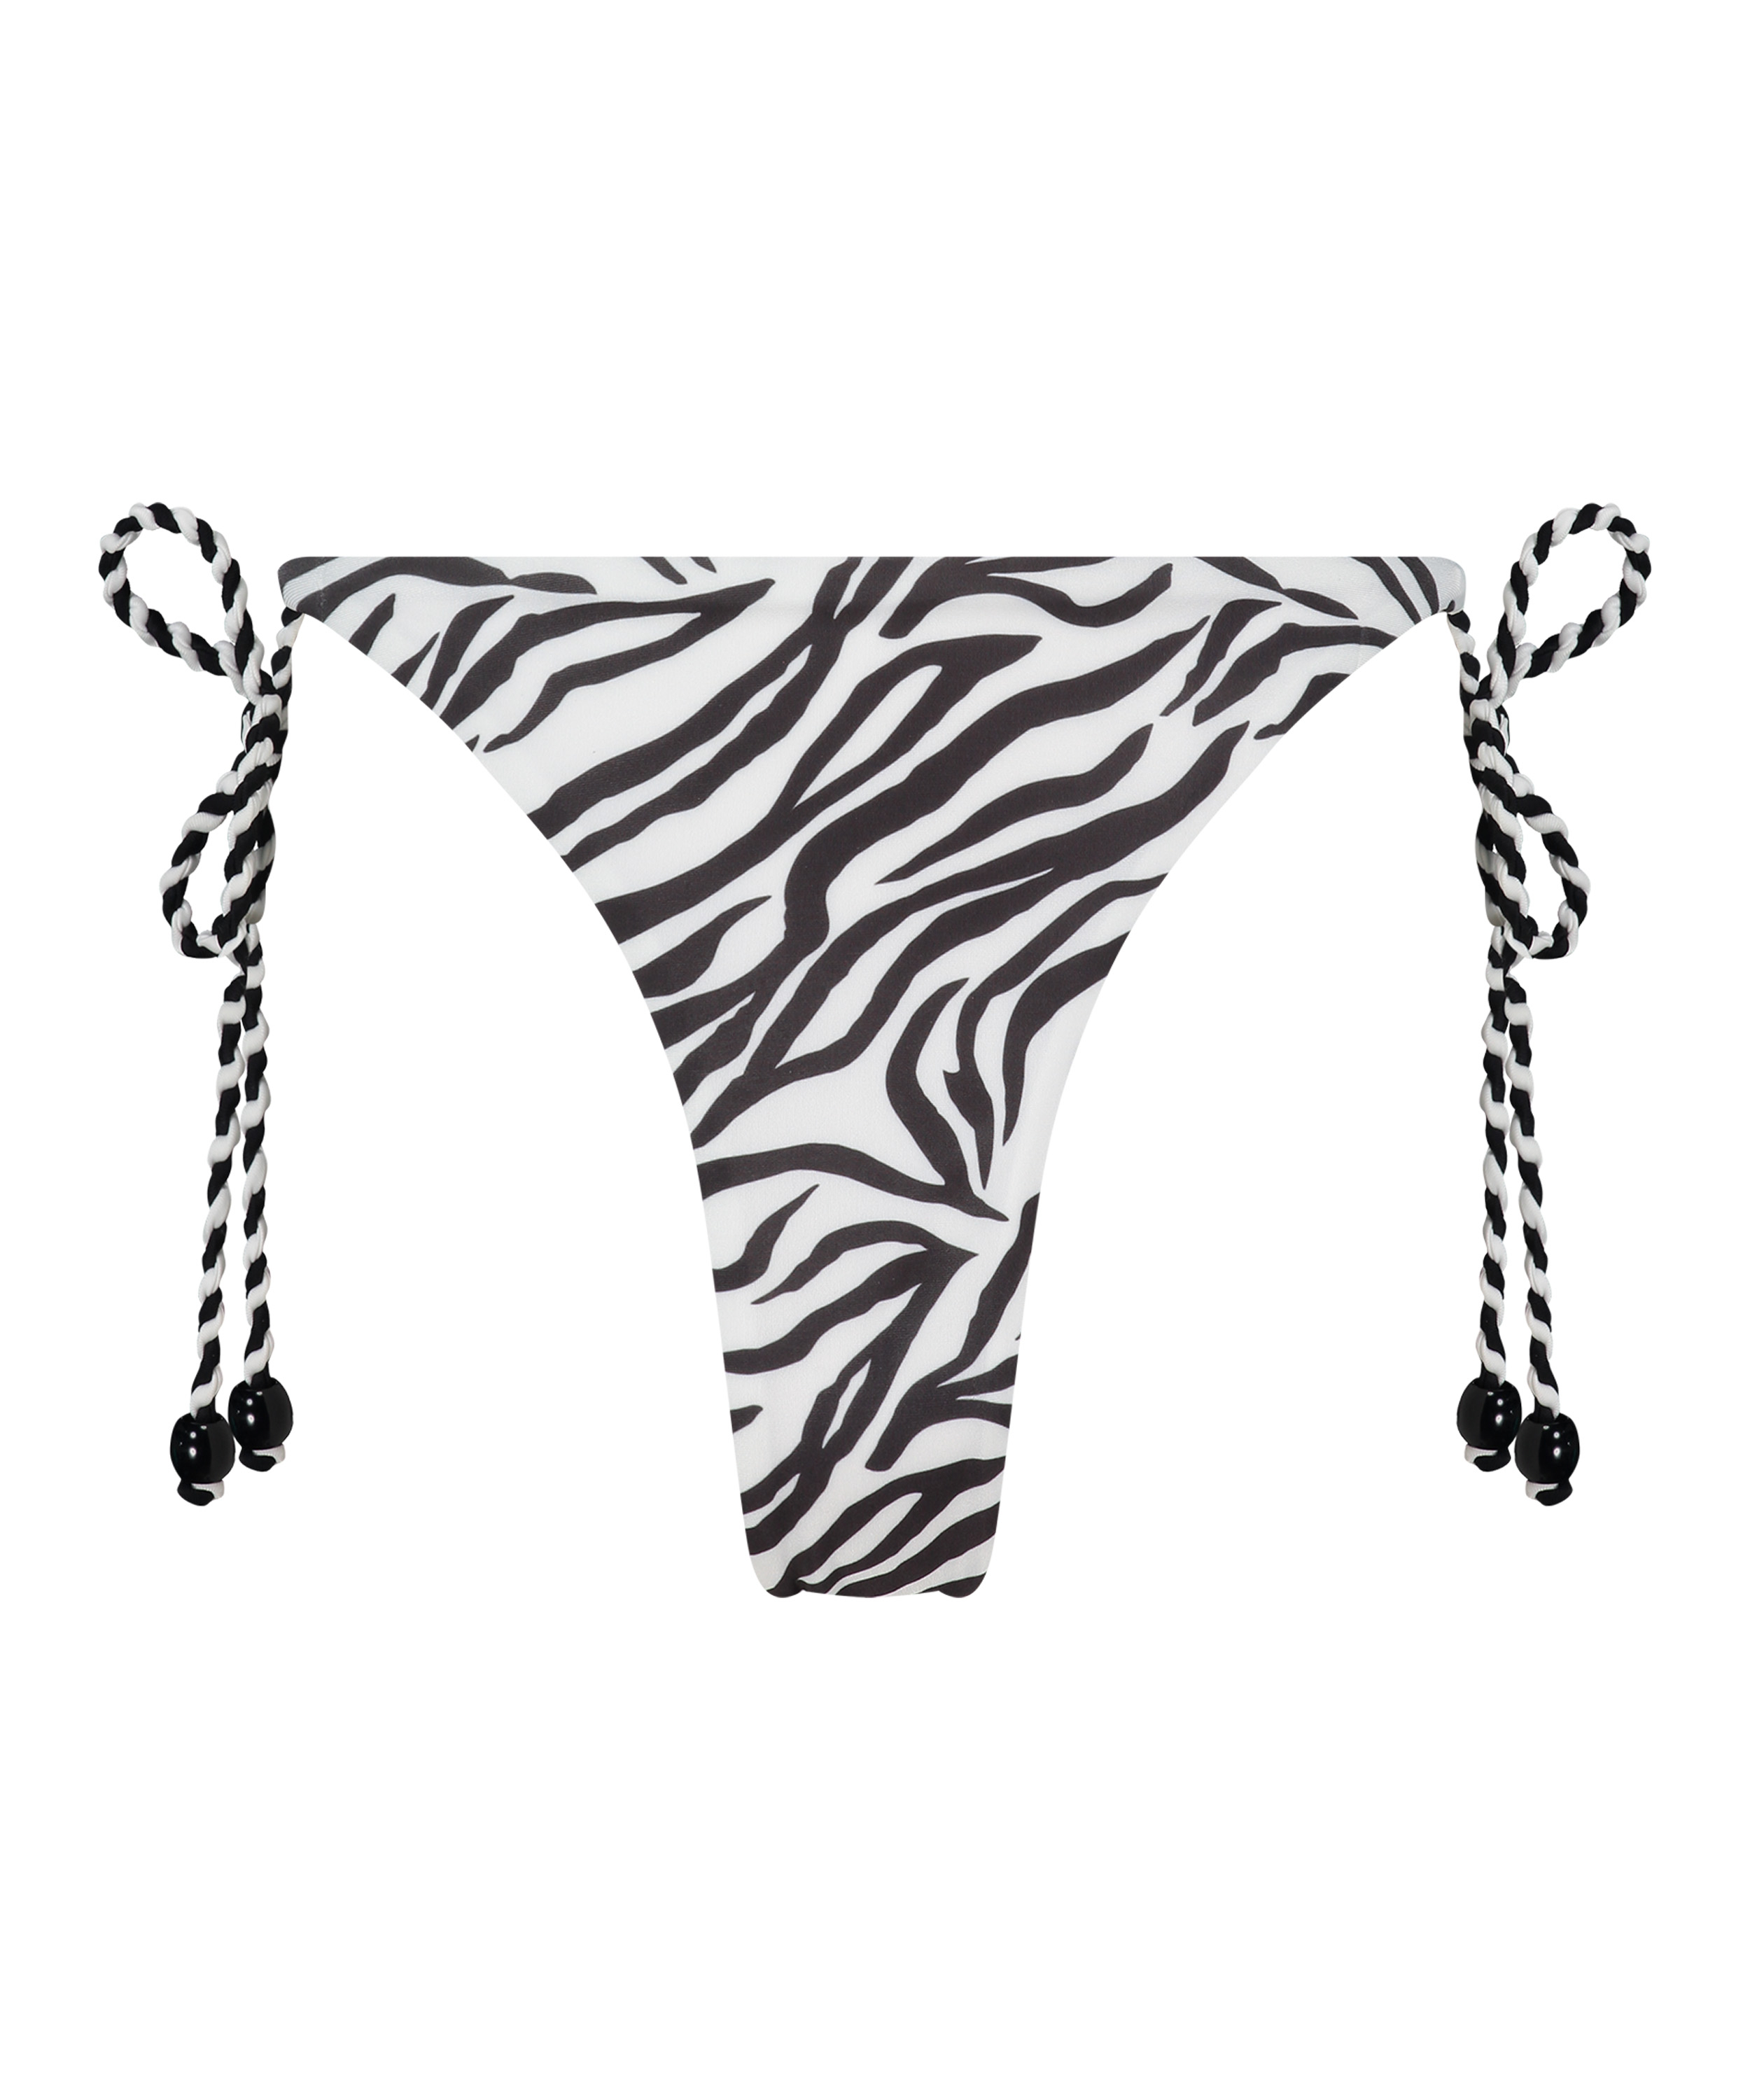 Majtki Bikini Cheeky Tanga Doha Zebra, Biały, main